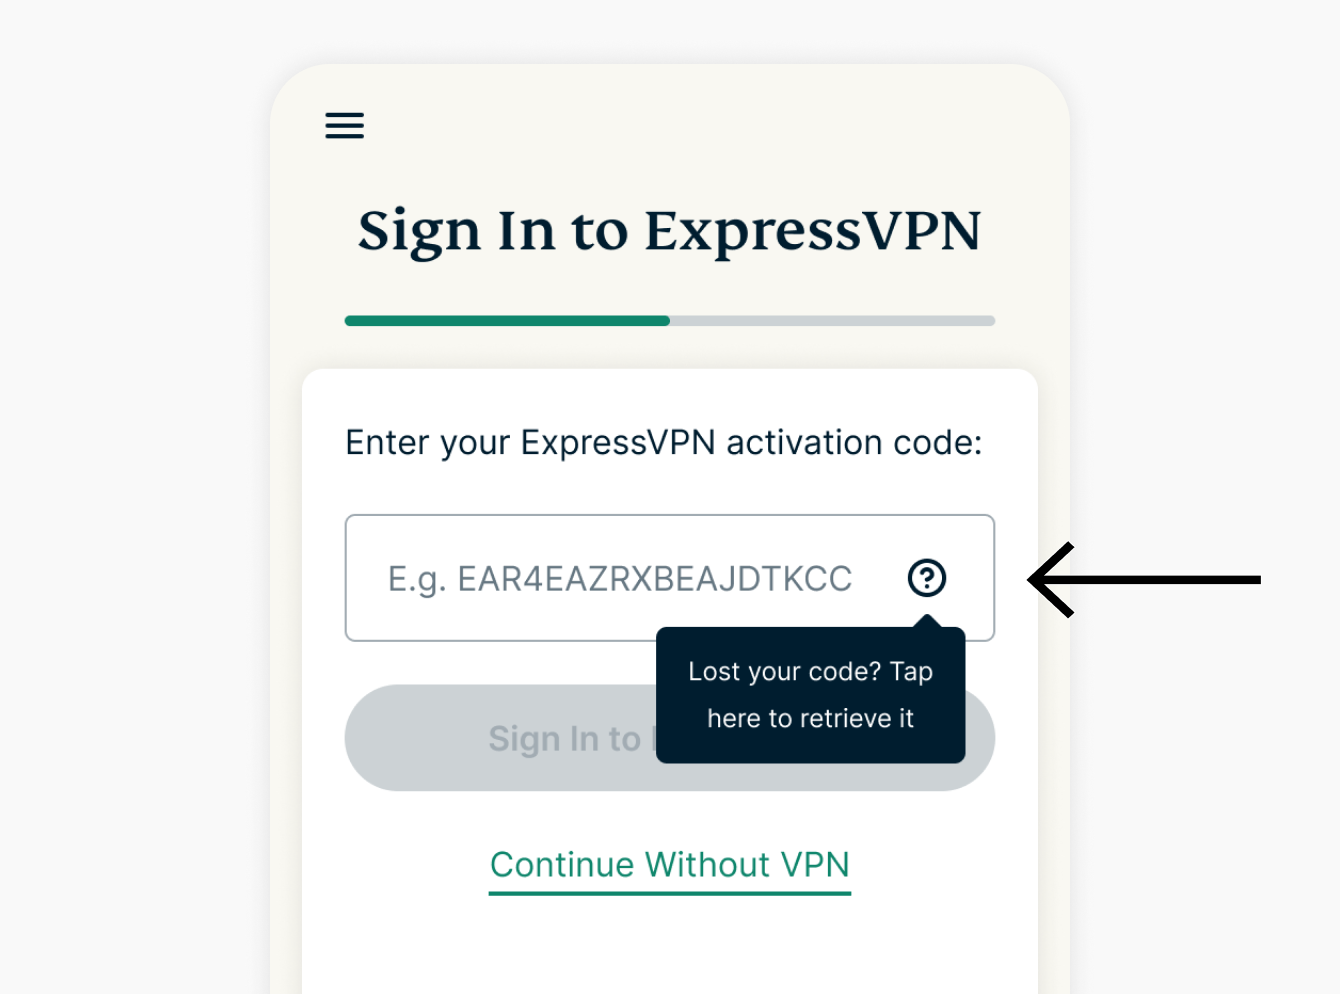 вход в expressvpn пароль потерян